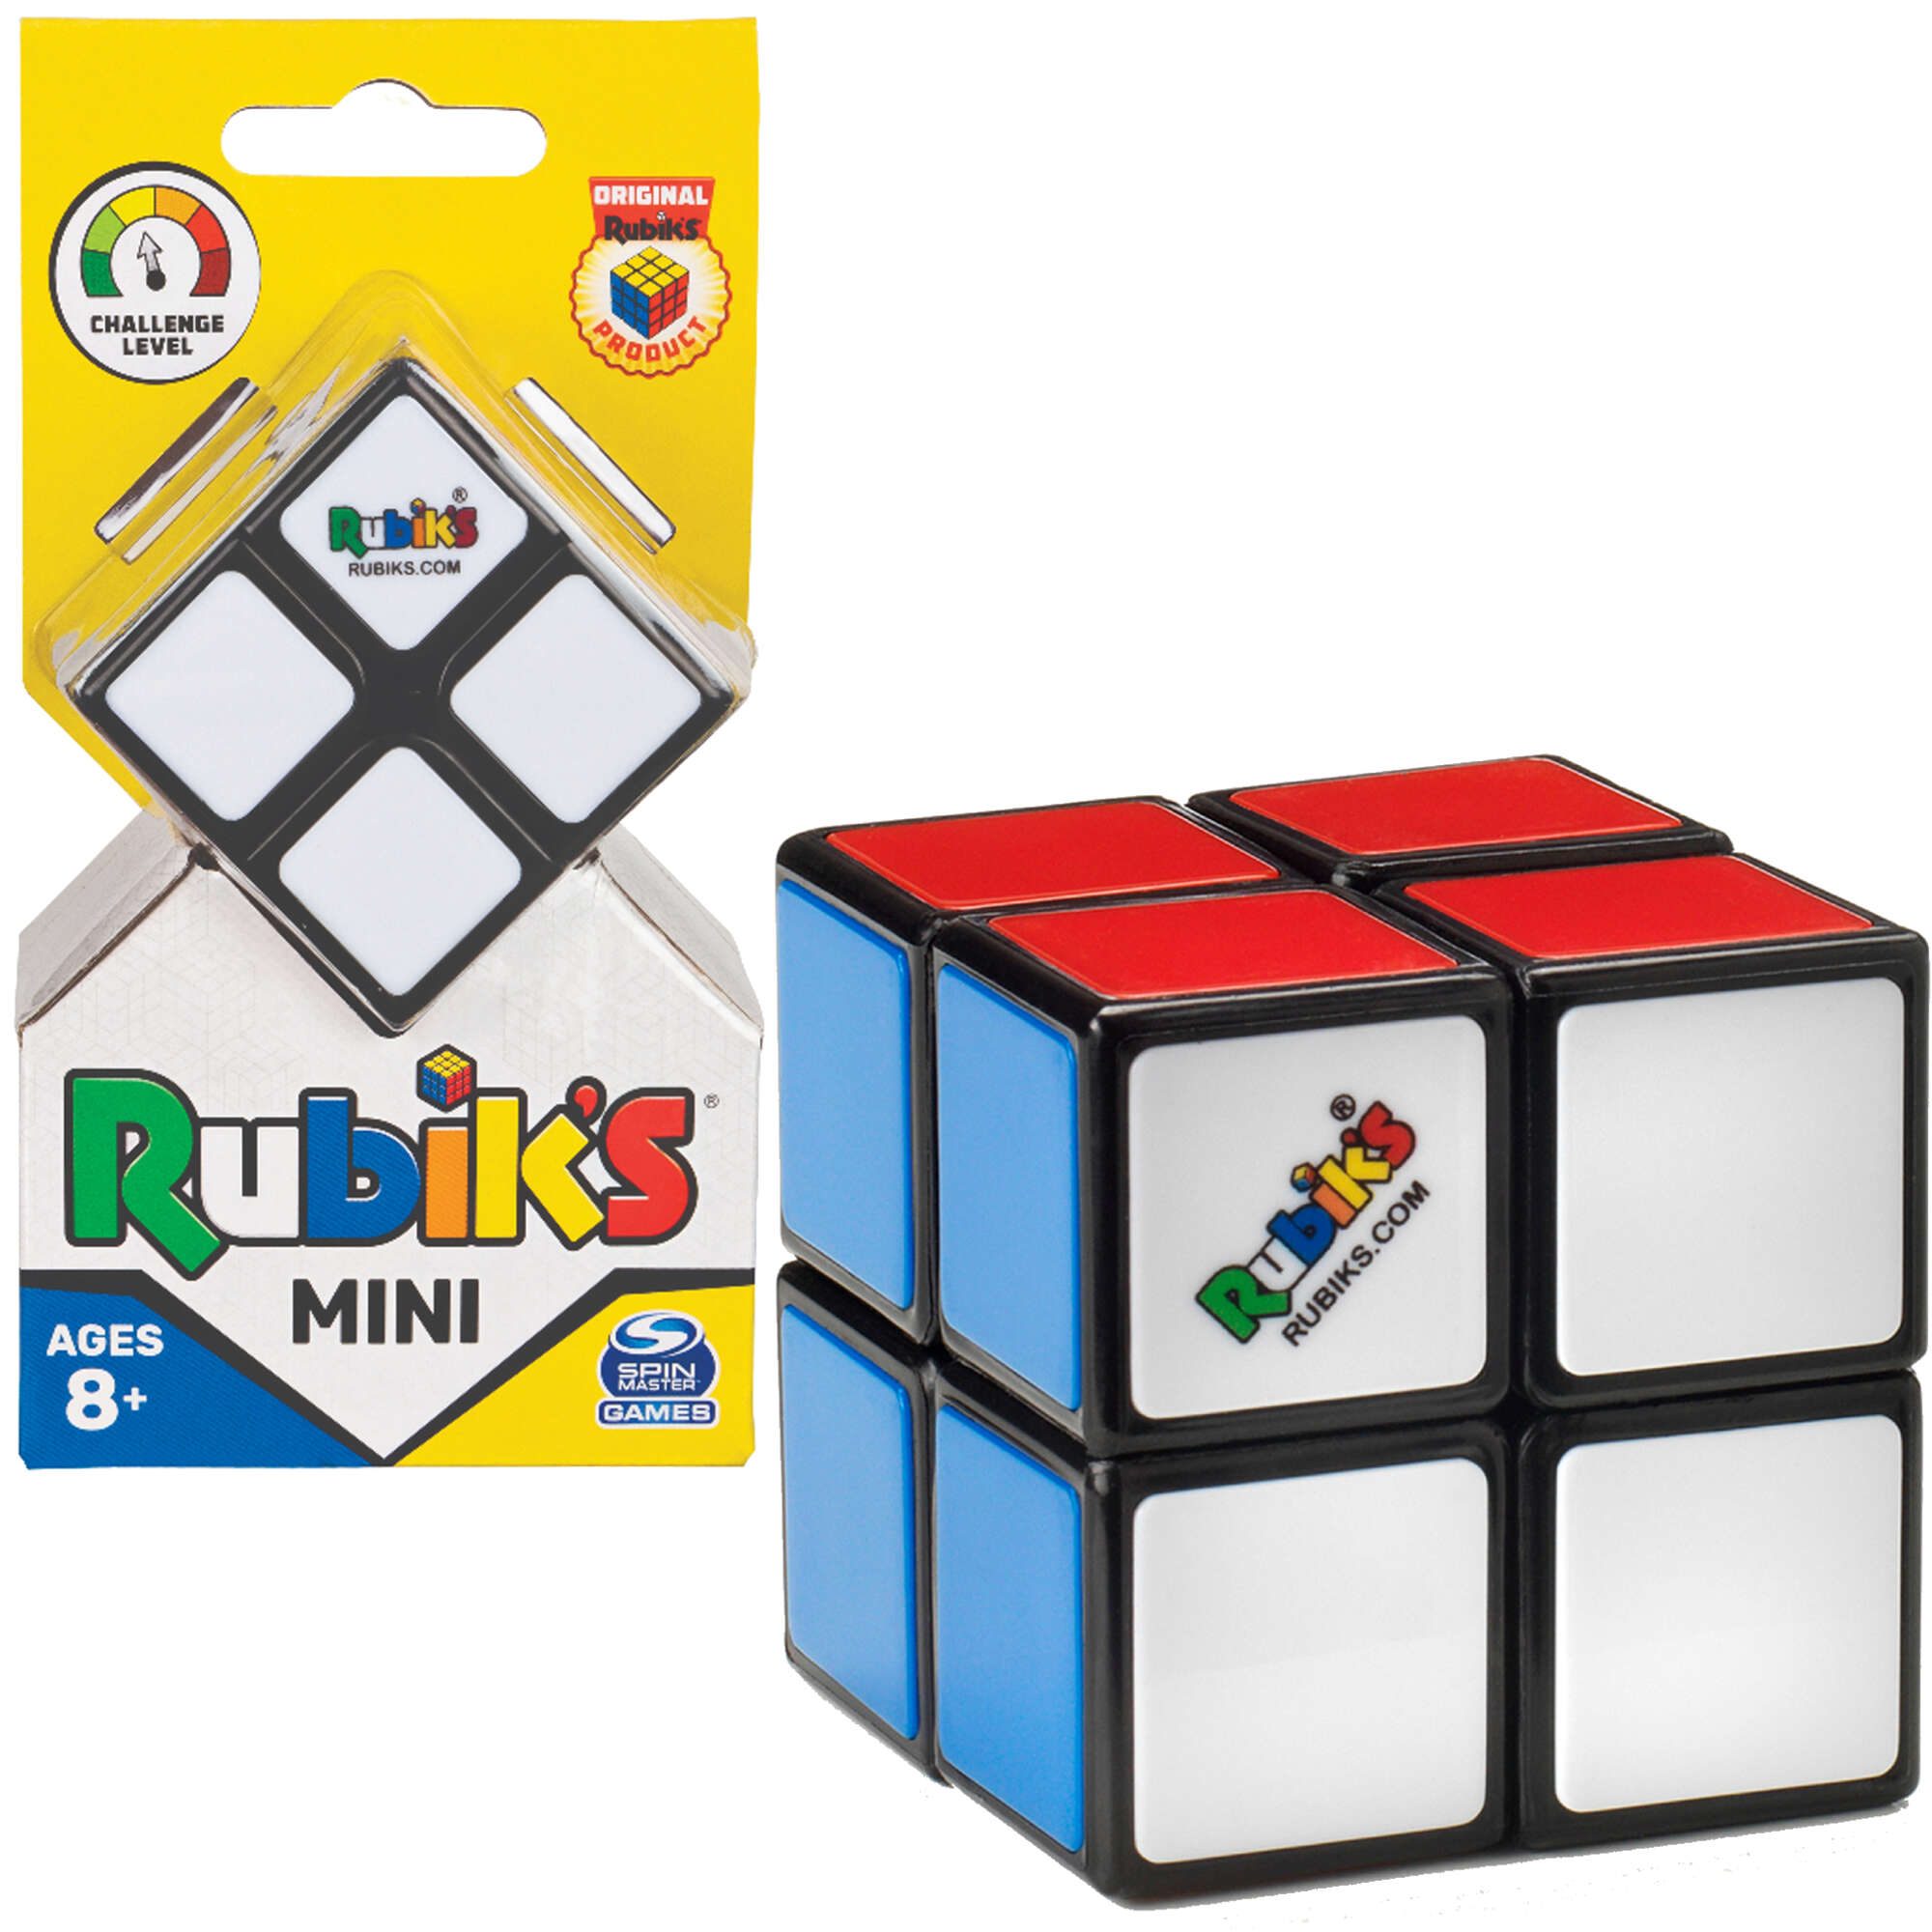 Kostka Rubika 2x2 Rubik's Cube Mini